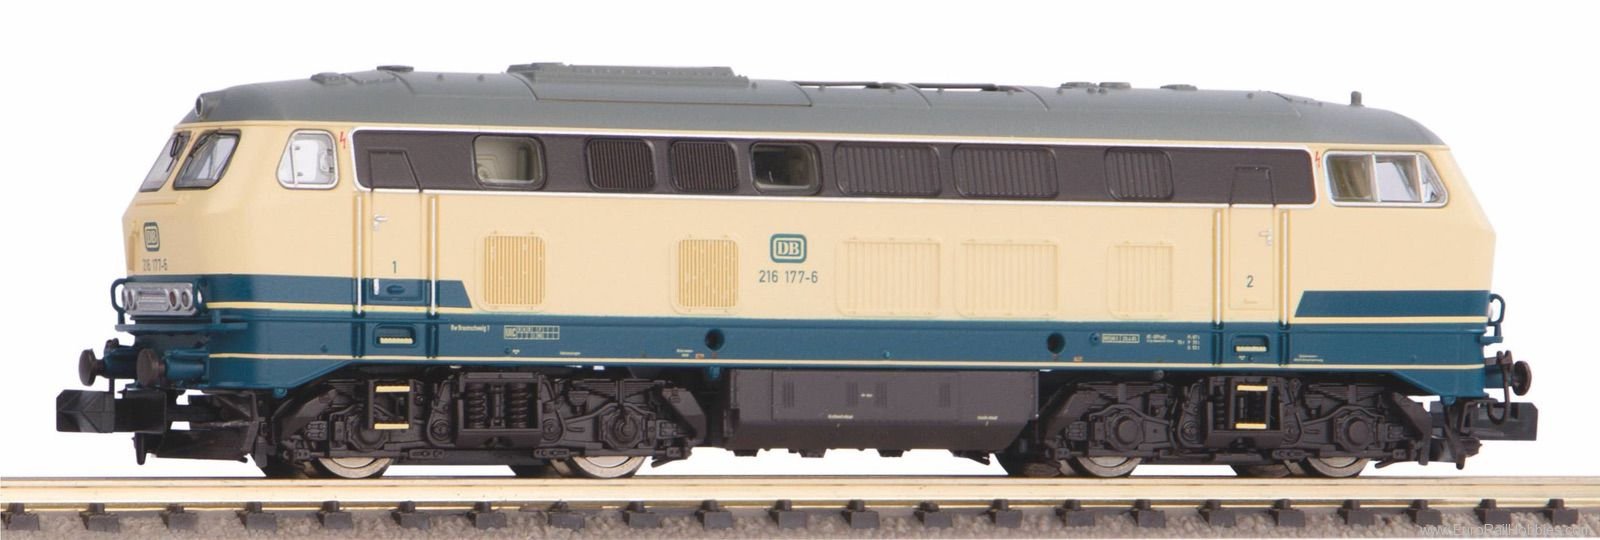 Piko 40522 N 216 DB IV Diesel Locomotive